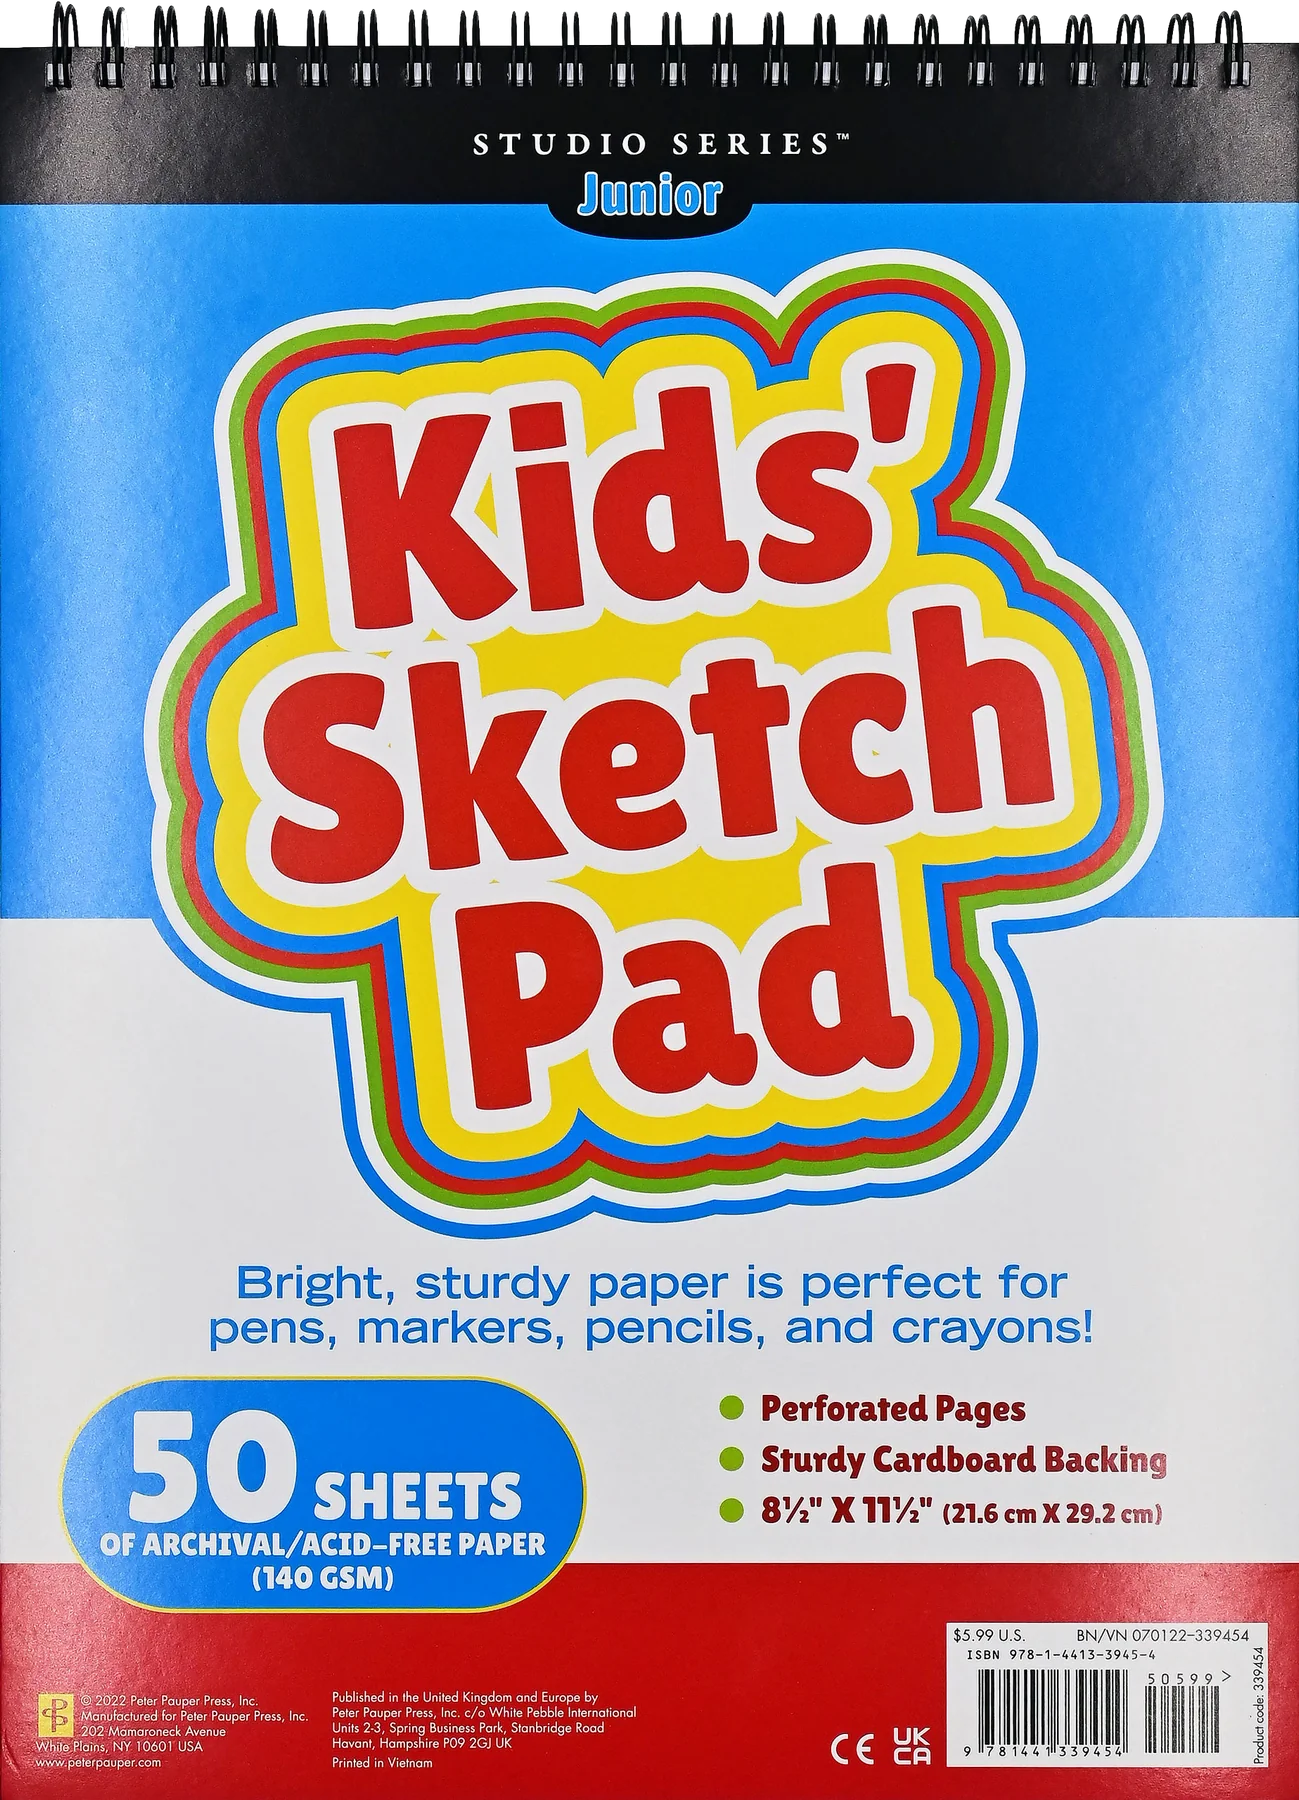 Kid’s Sketch Pad